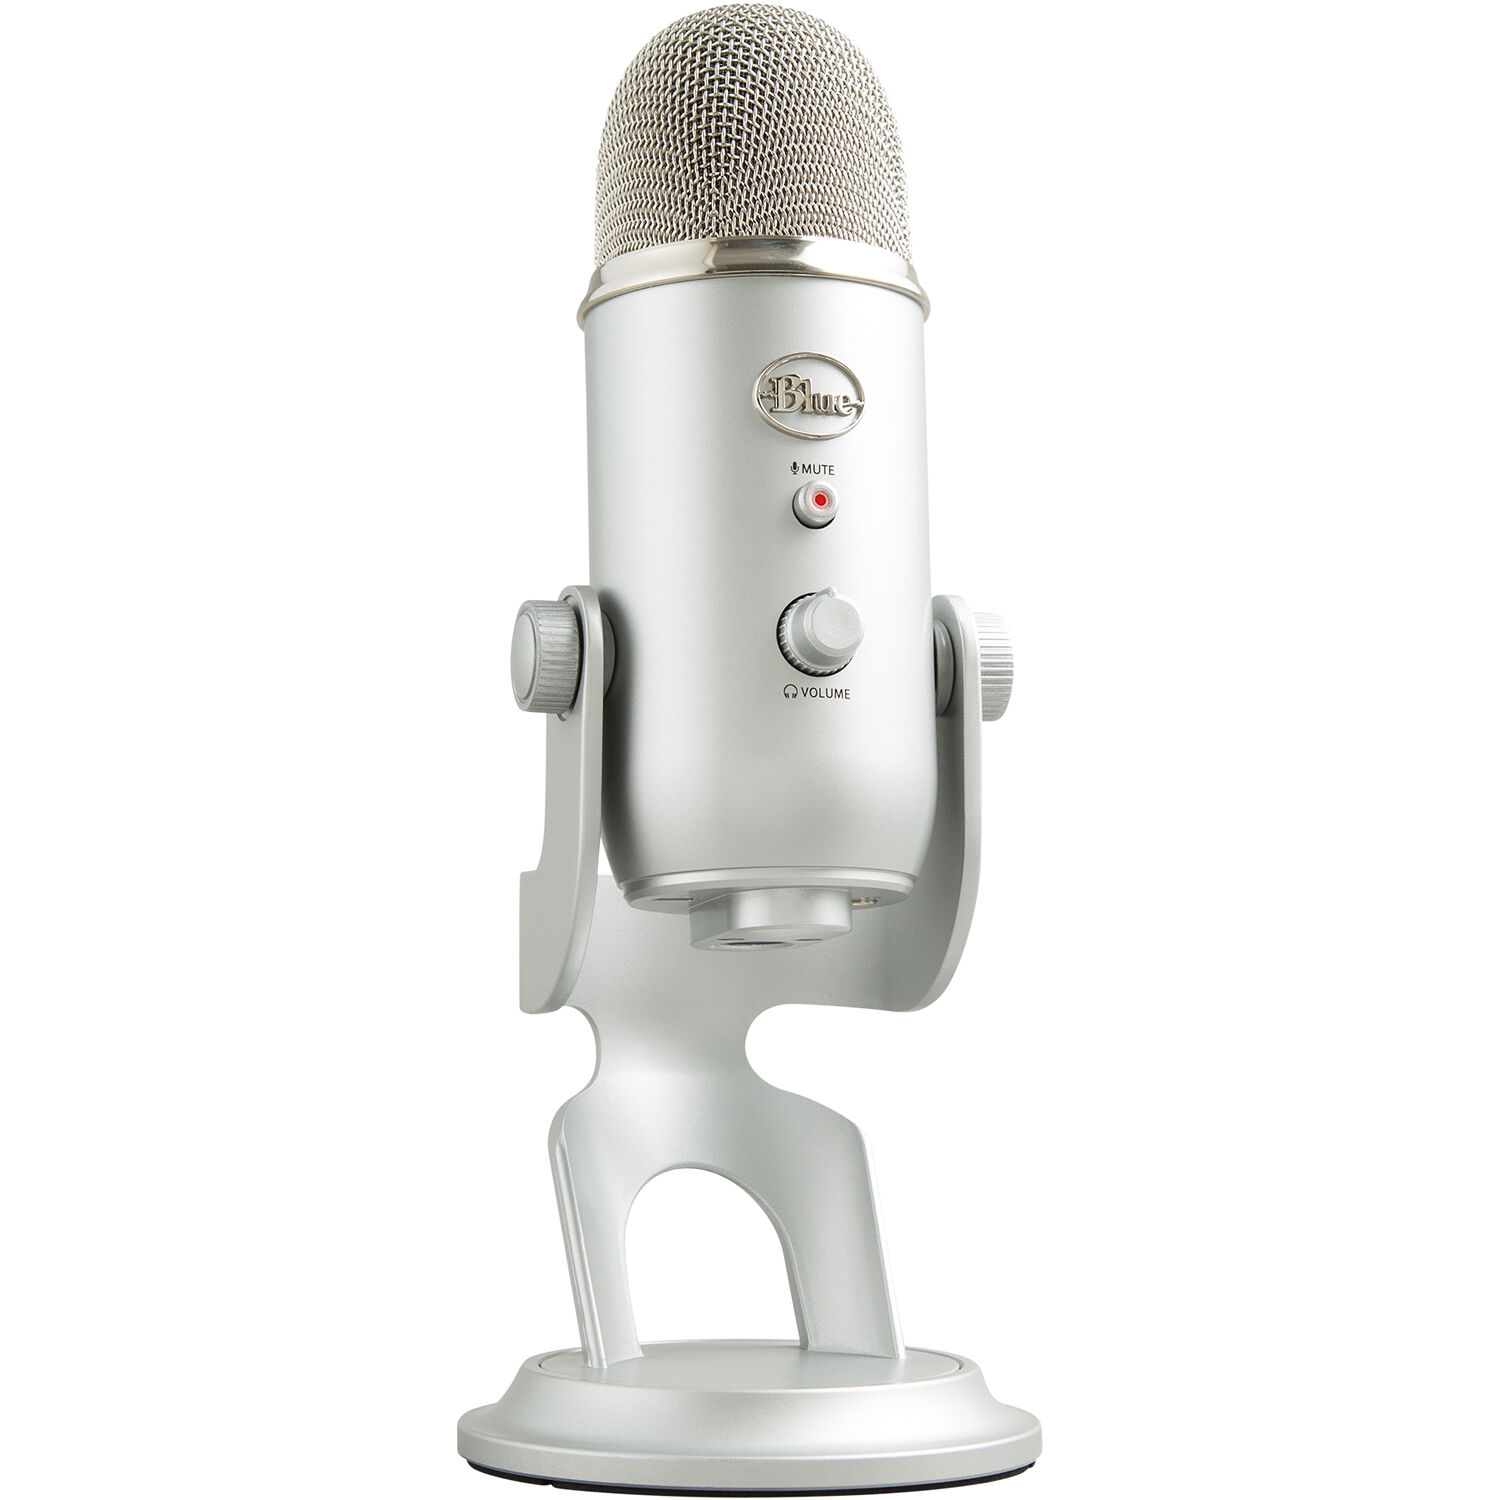 Microphones dynamiques ou à condensateur - Quel est le plus adapté ?